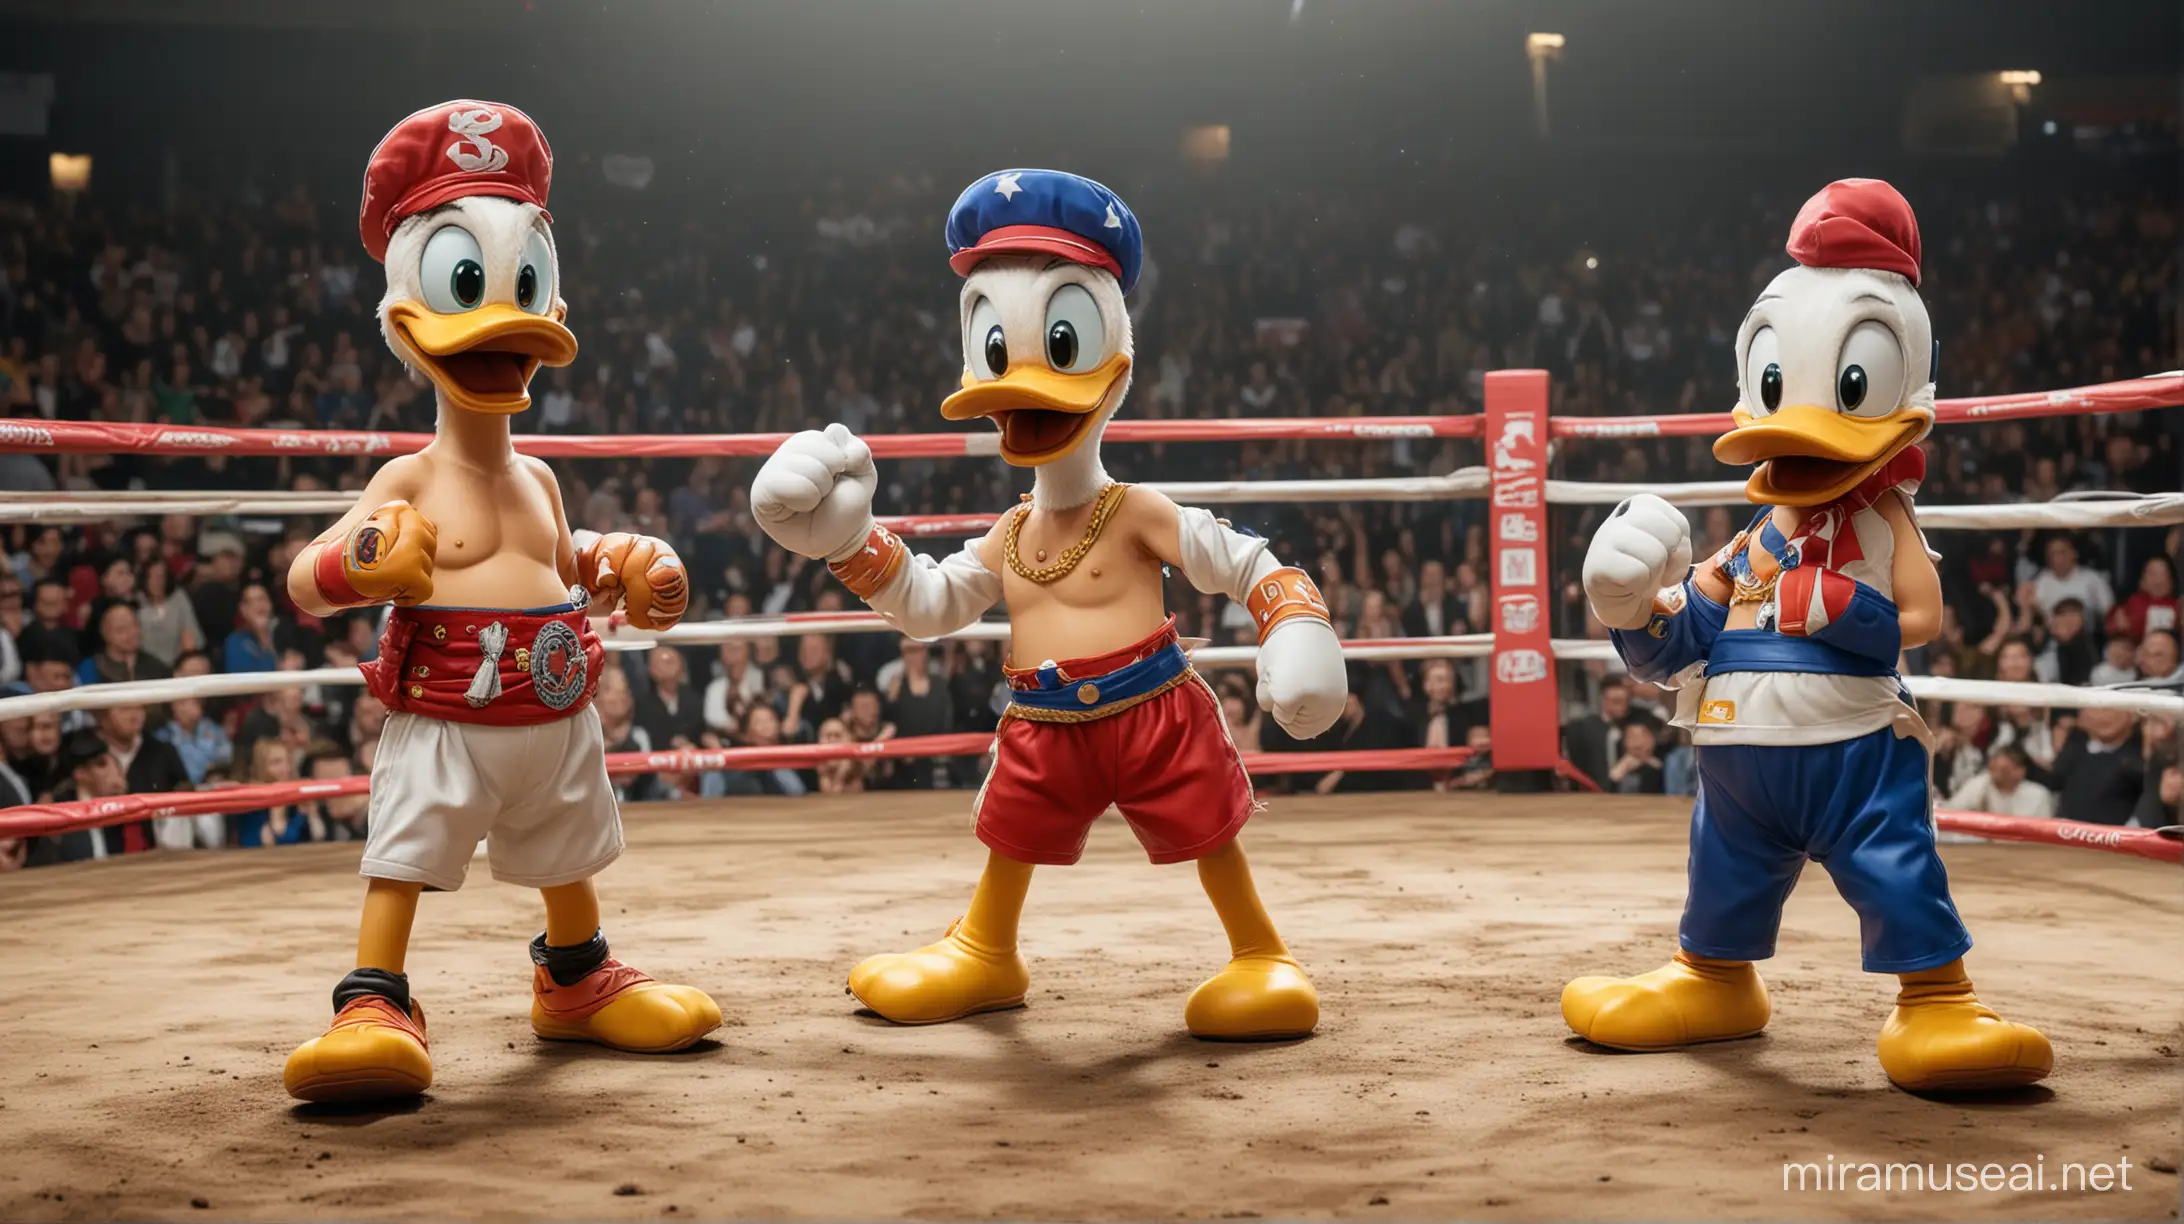 Epic Mascot Showdown Donald Duck vs Chavo del 8 in the Ring